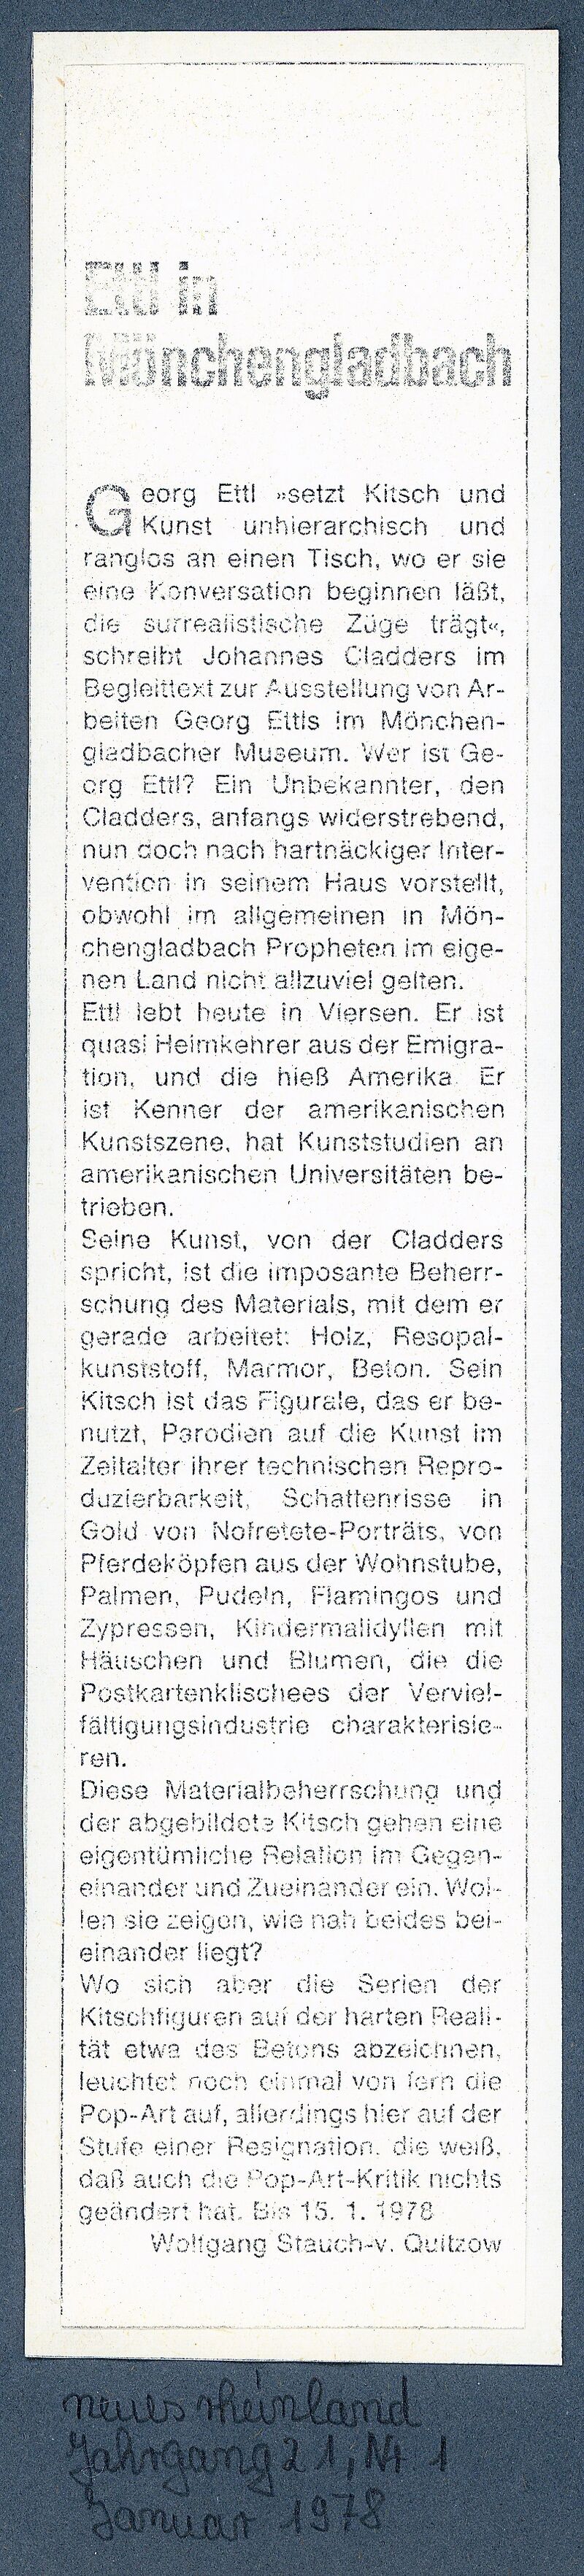 Neues Rheinland, 21. Jg., Nr. 1, Januar 1978